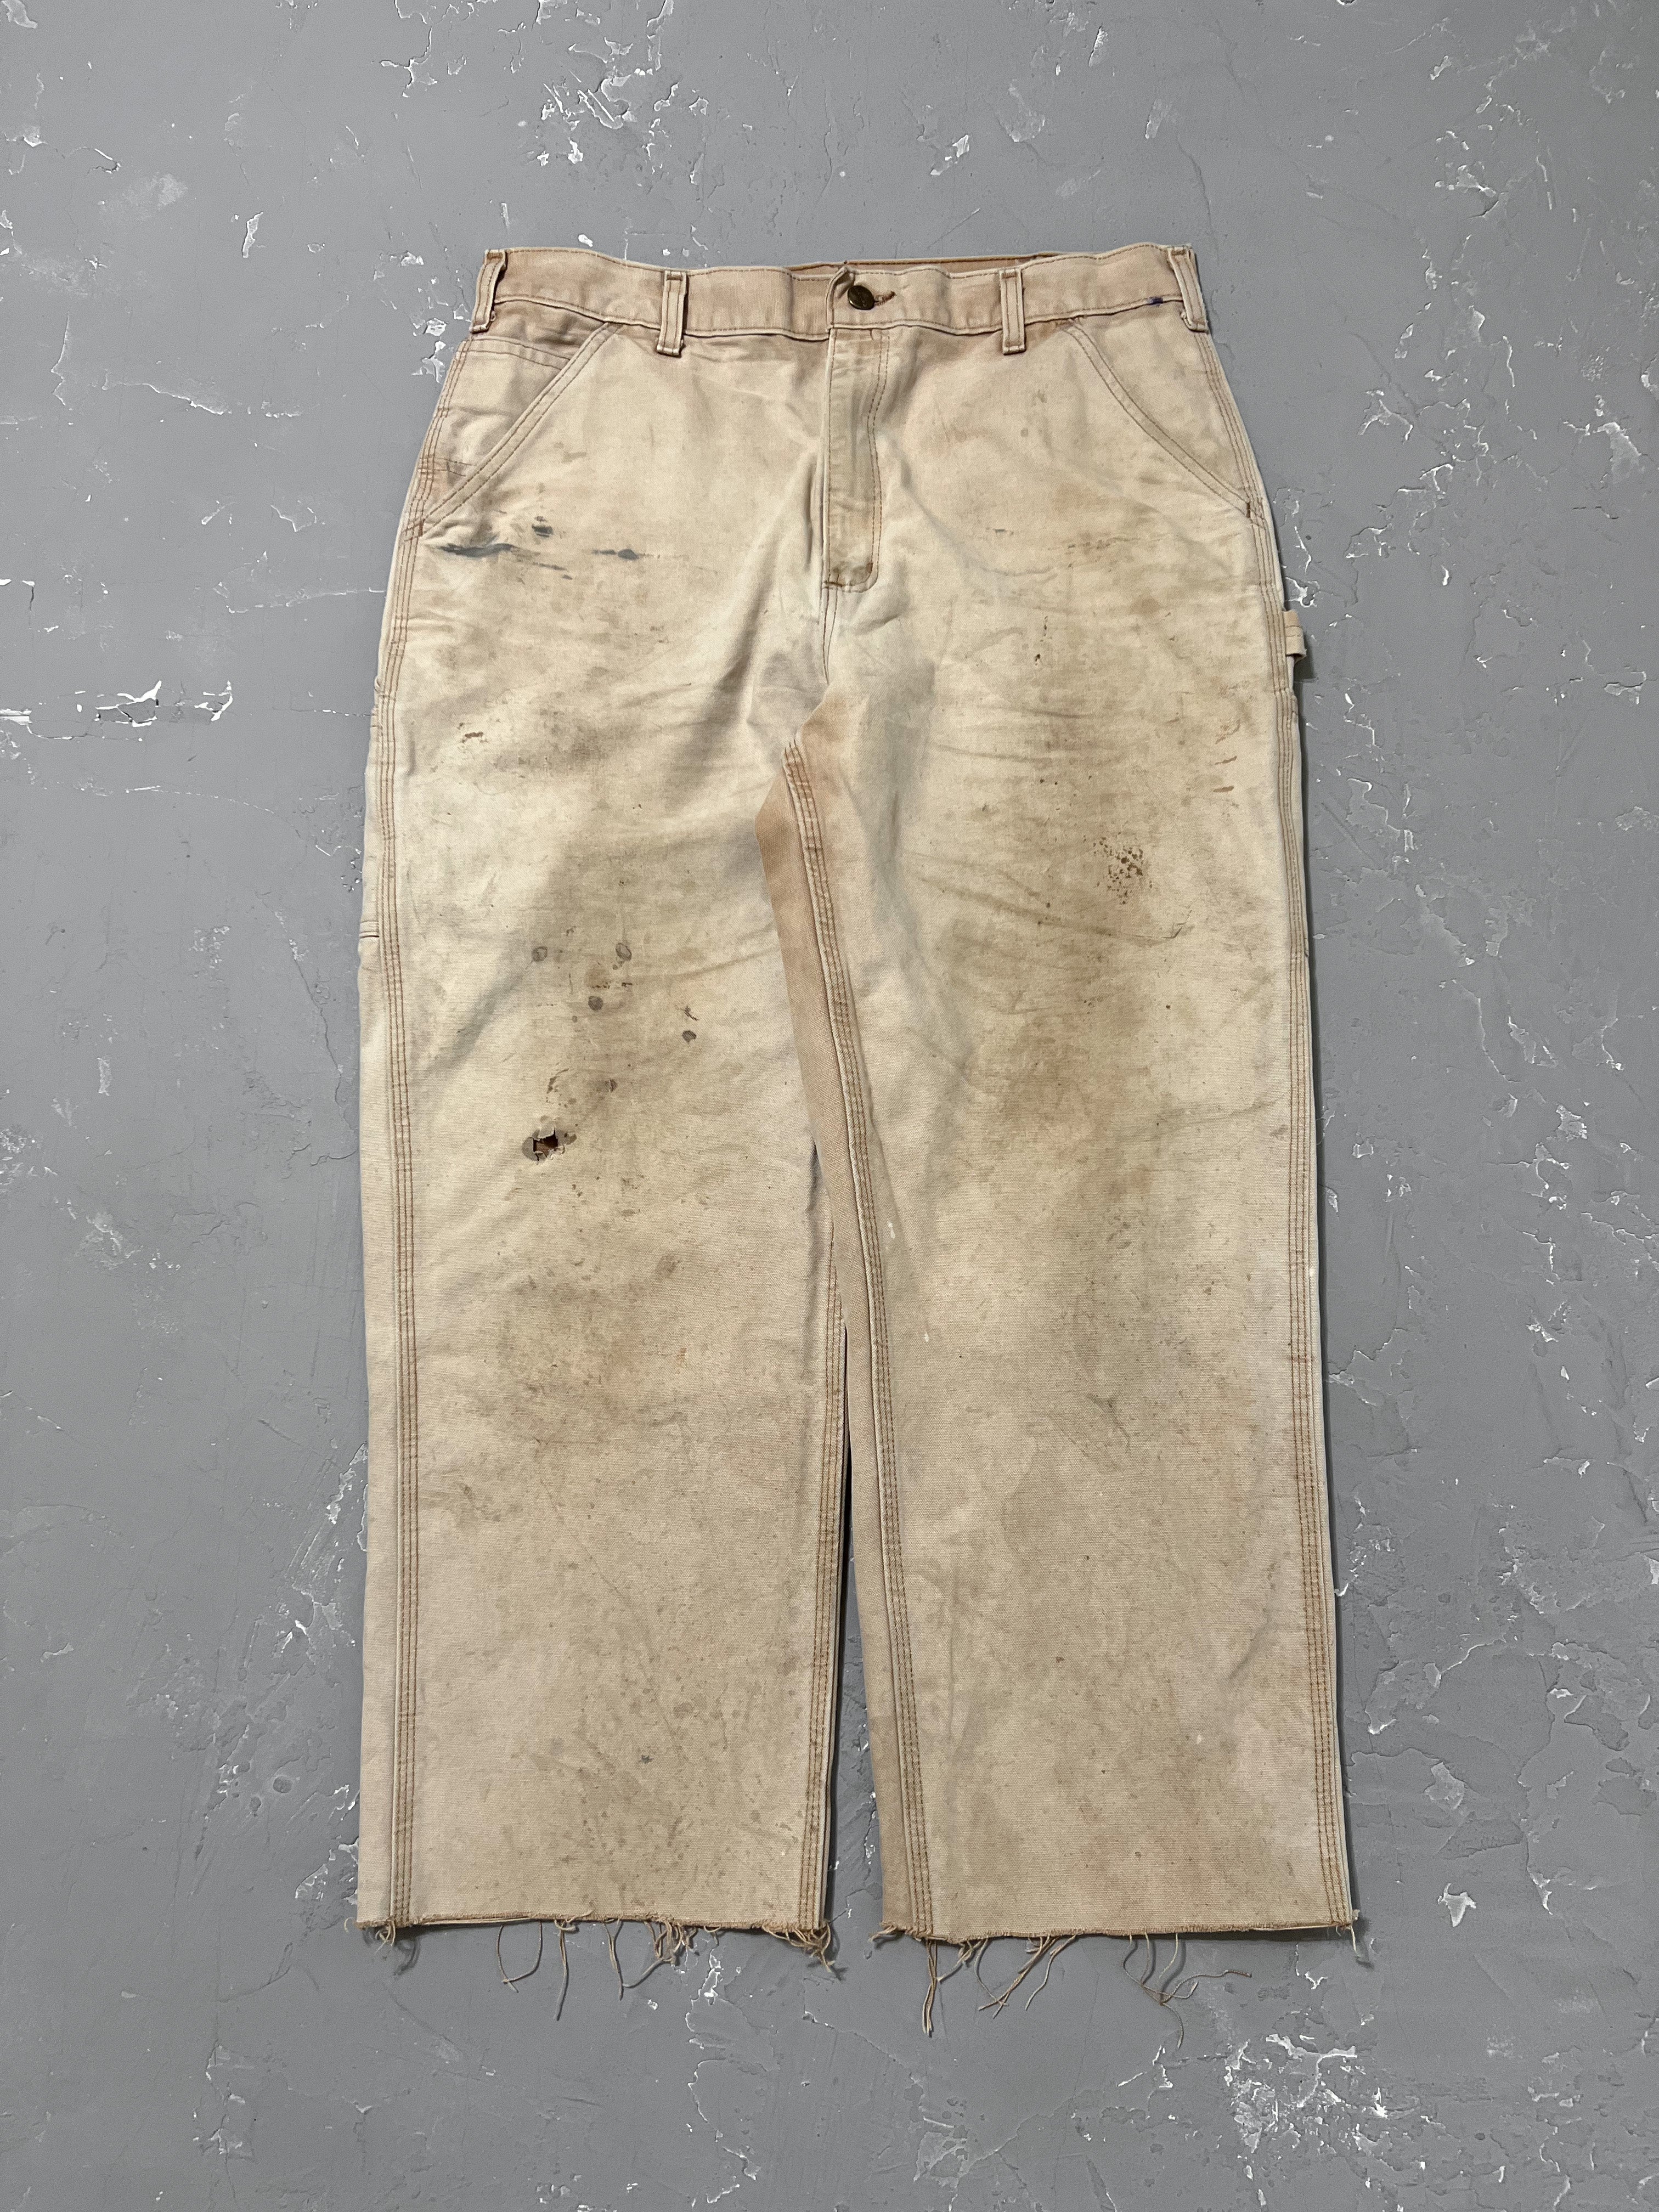 Carhartt Sun Faded Carpenter Pants [36 x 30]